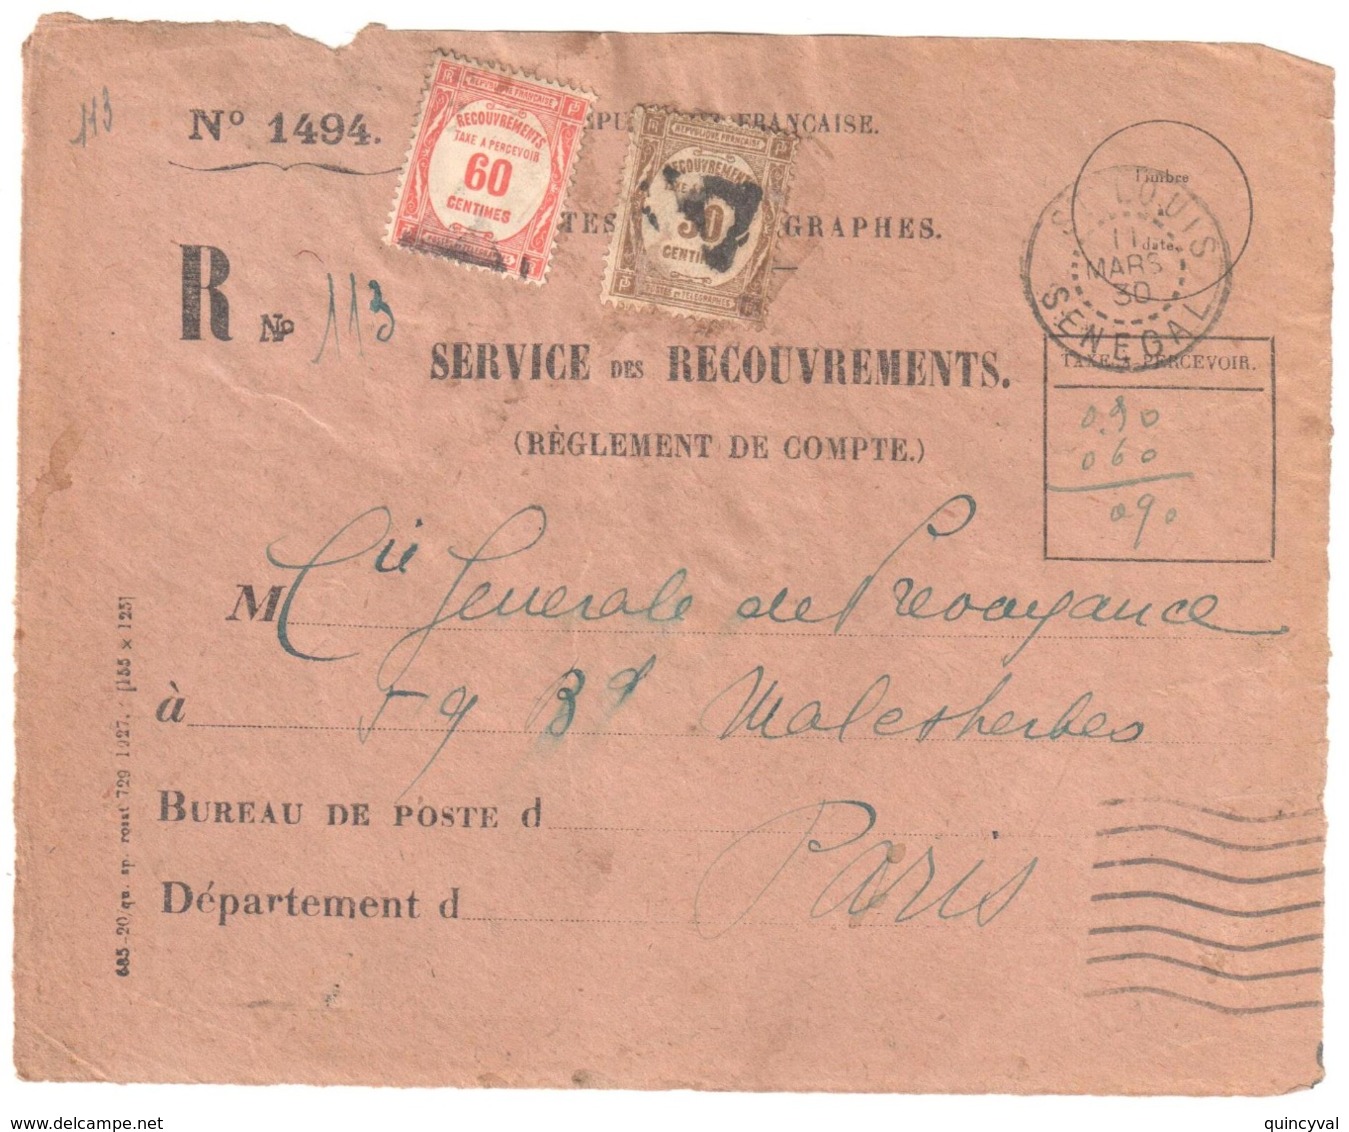 St LOUIS Sénégal Devant Enveloppe 1494 Reco Ob 11 3 1930 Taxe Yv 57 58 Preo PARIS - Covers & Documents